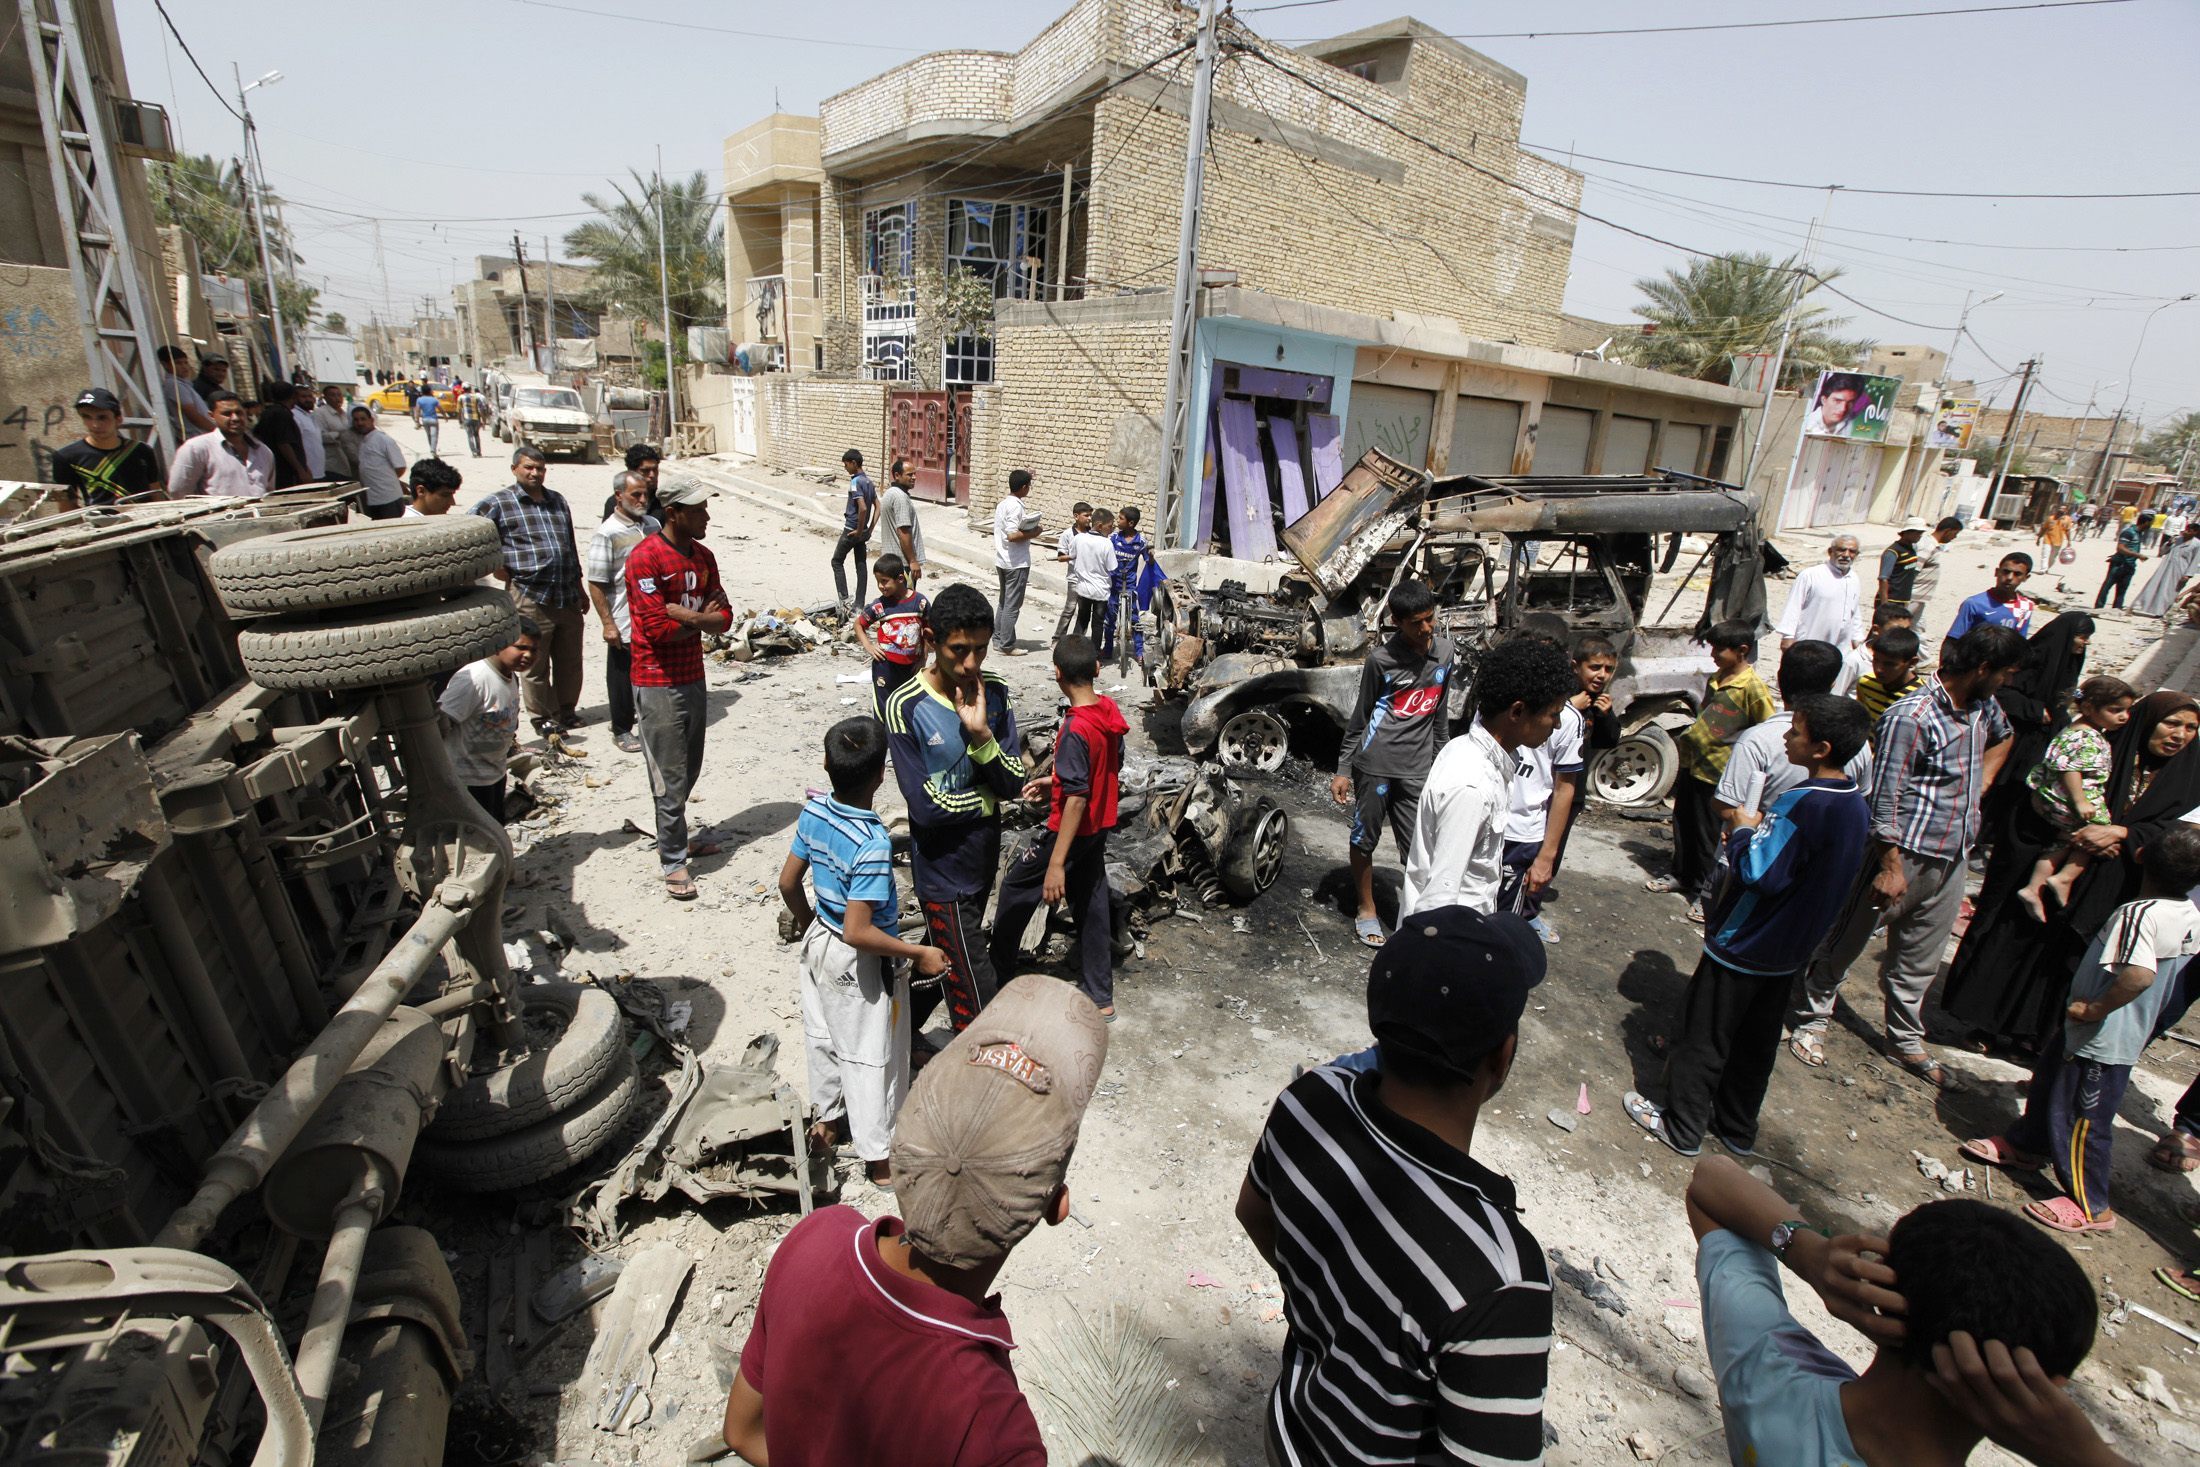 37 νεκροί και πάνω από 270 τραυματίες σε αιματηρή επίθεση στο Ιράκ